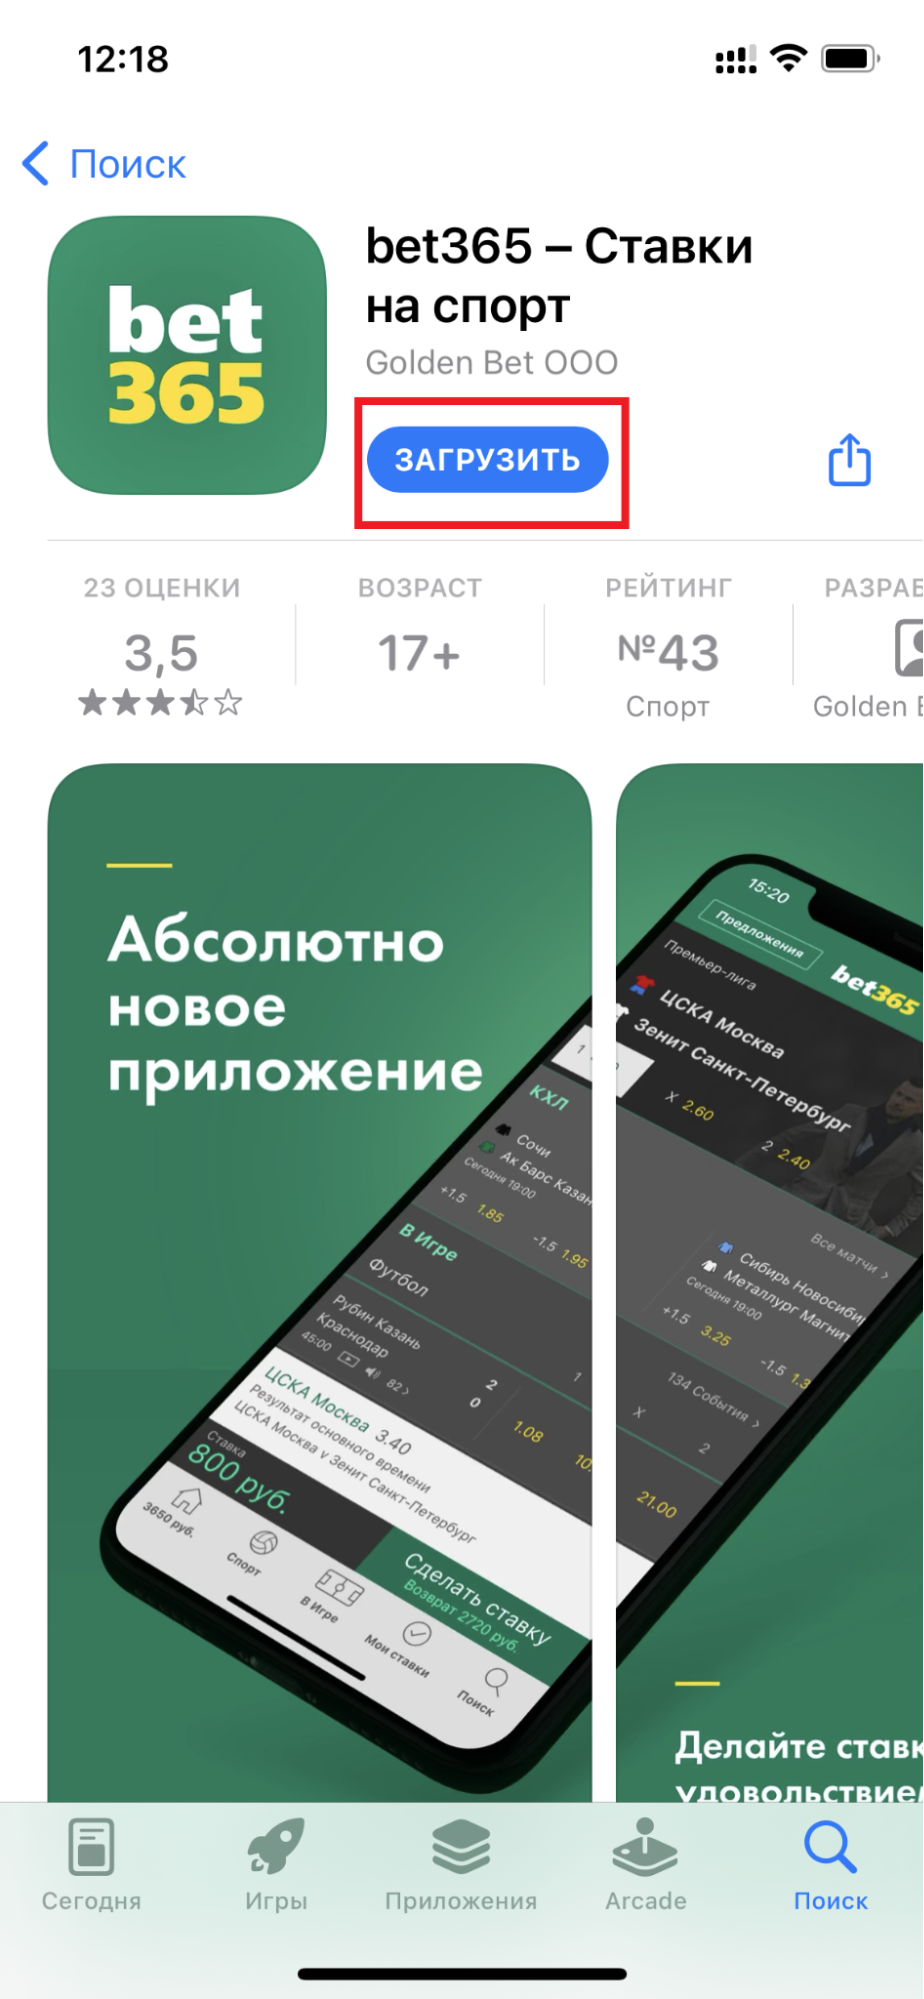 Кнопка загрузки приложения БК bet365.ru для iOS на странице приложения в AppStore